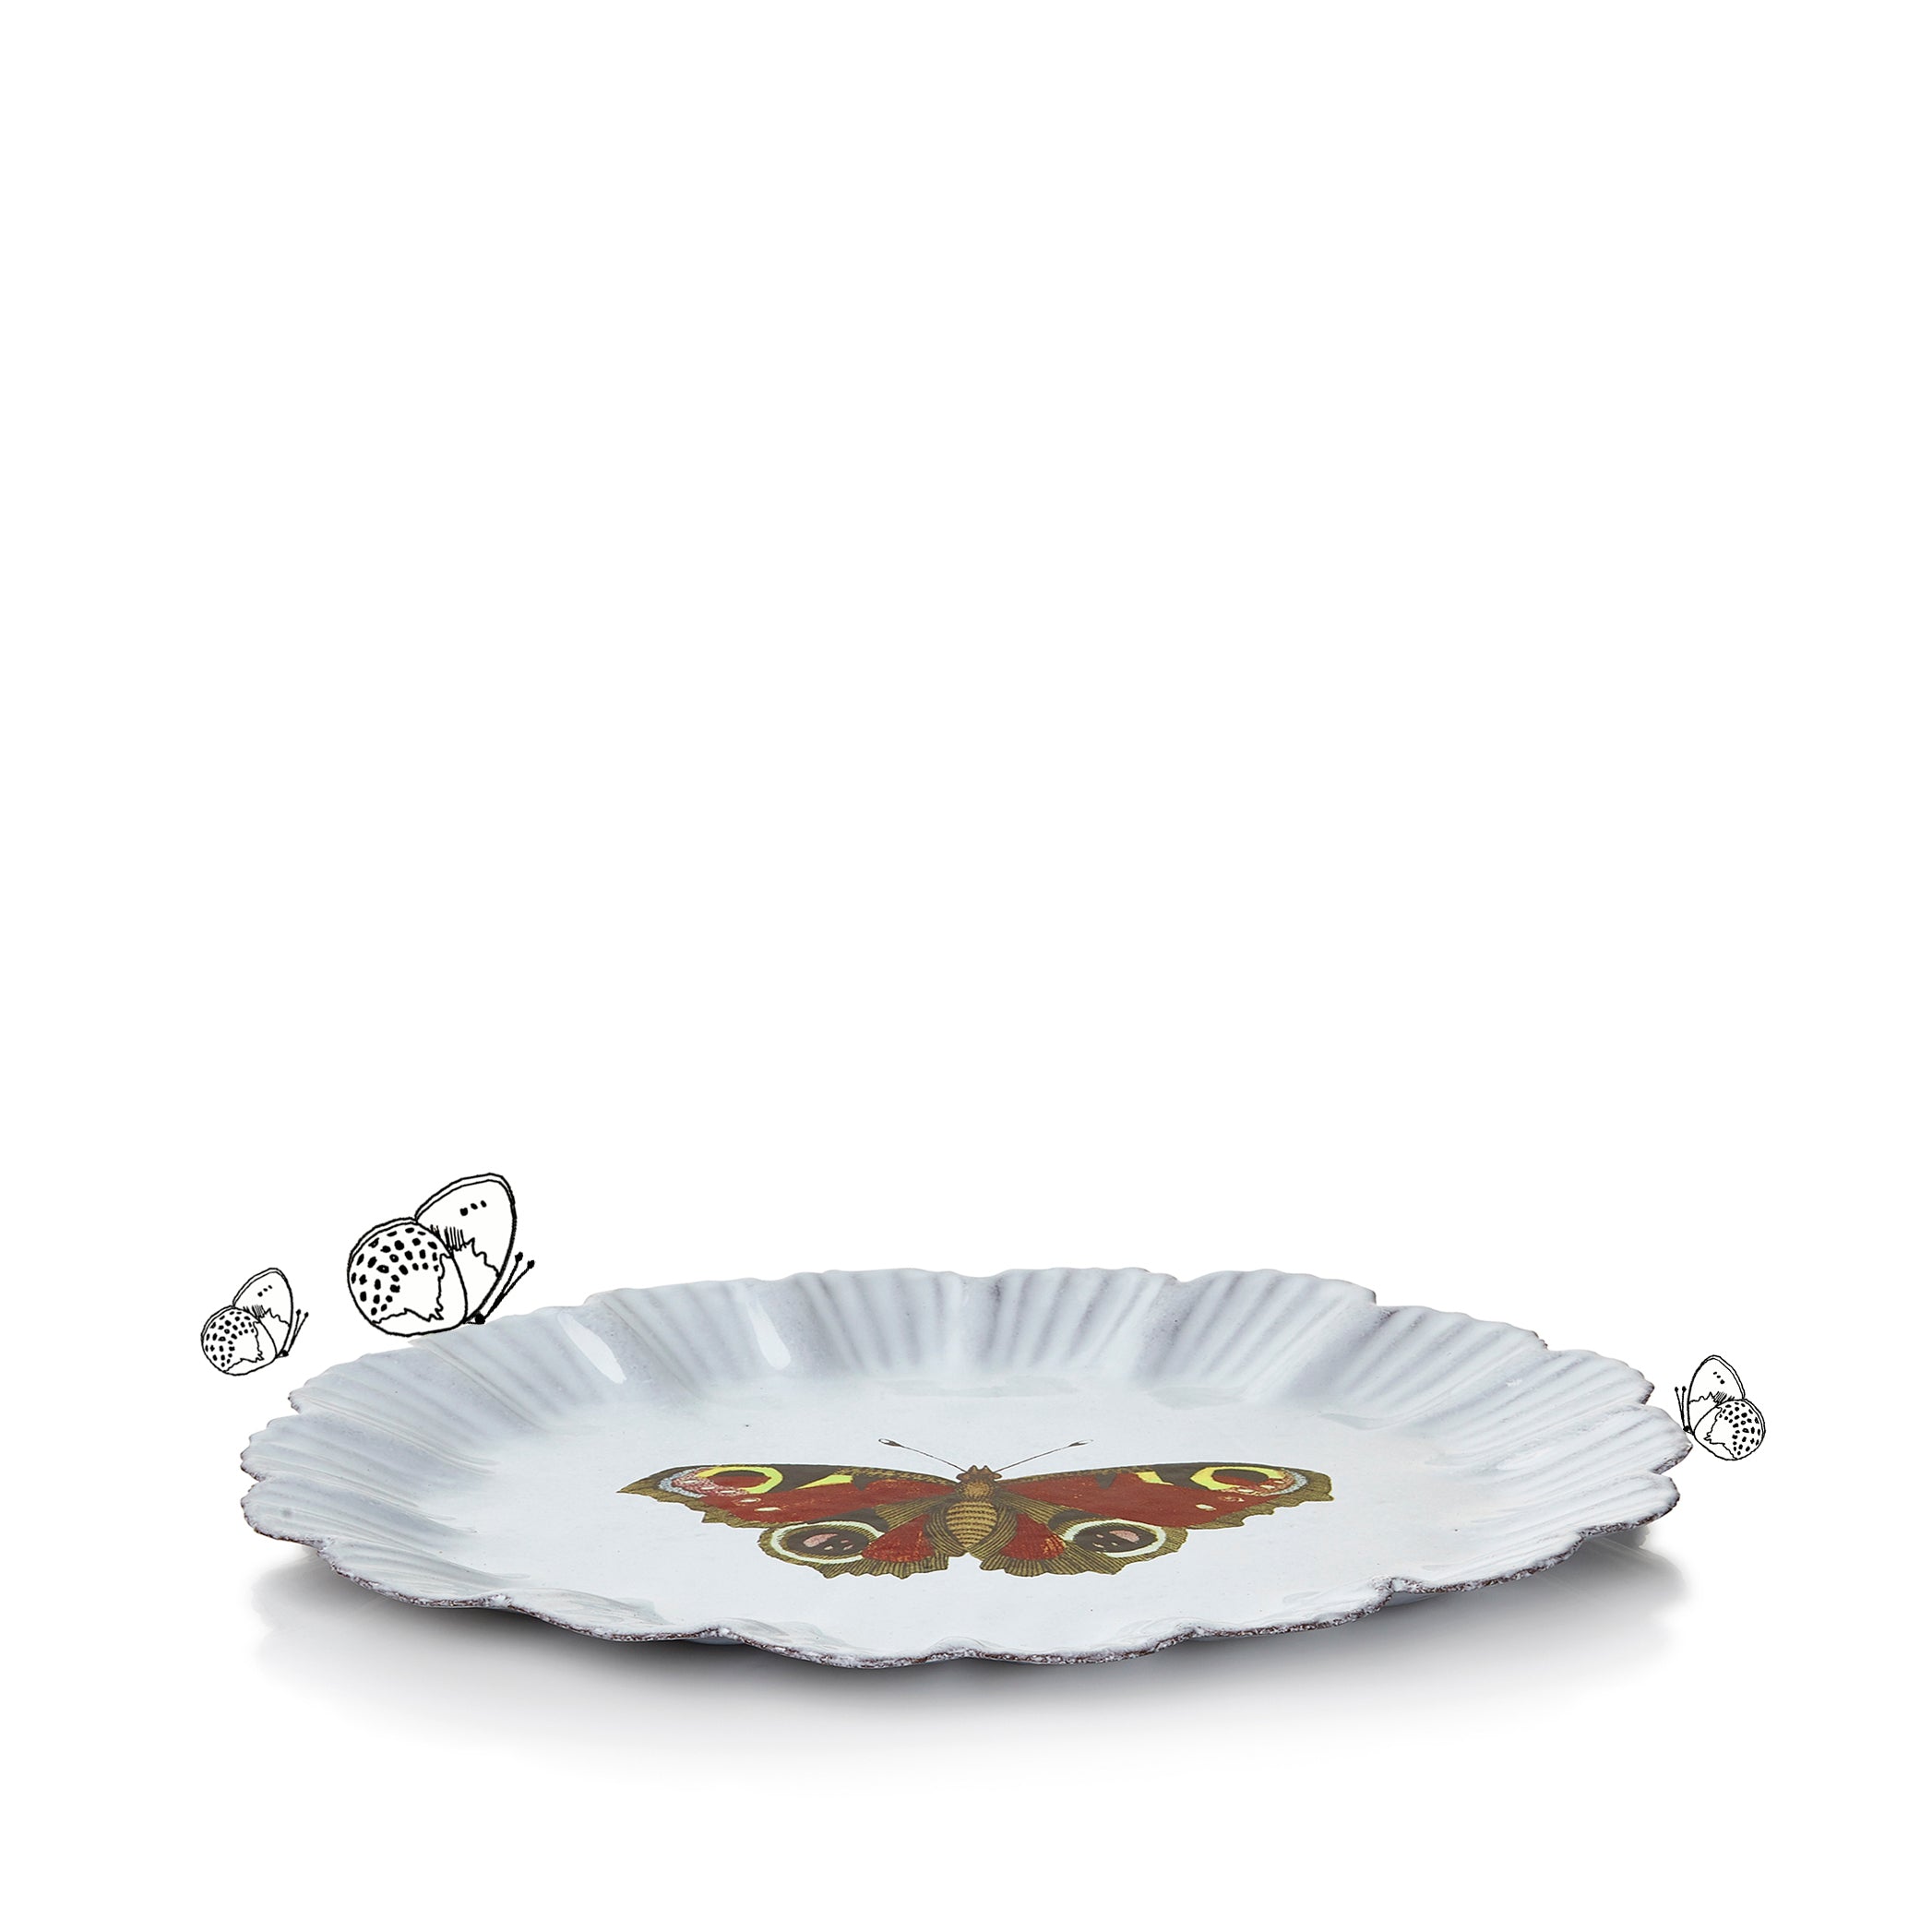 Burgundy Butterfly Dinner Plate by Astier de Villatte, 26.6cm